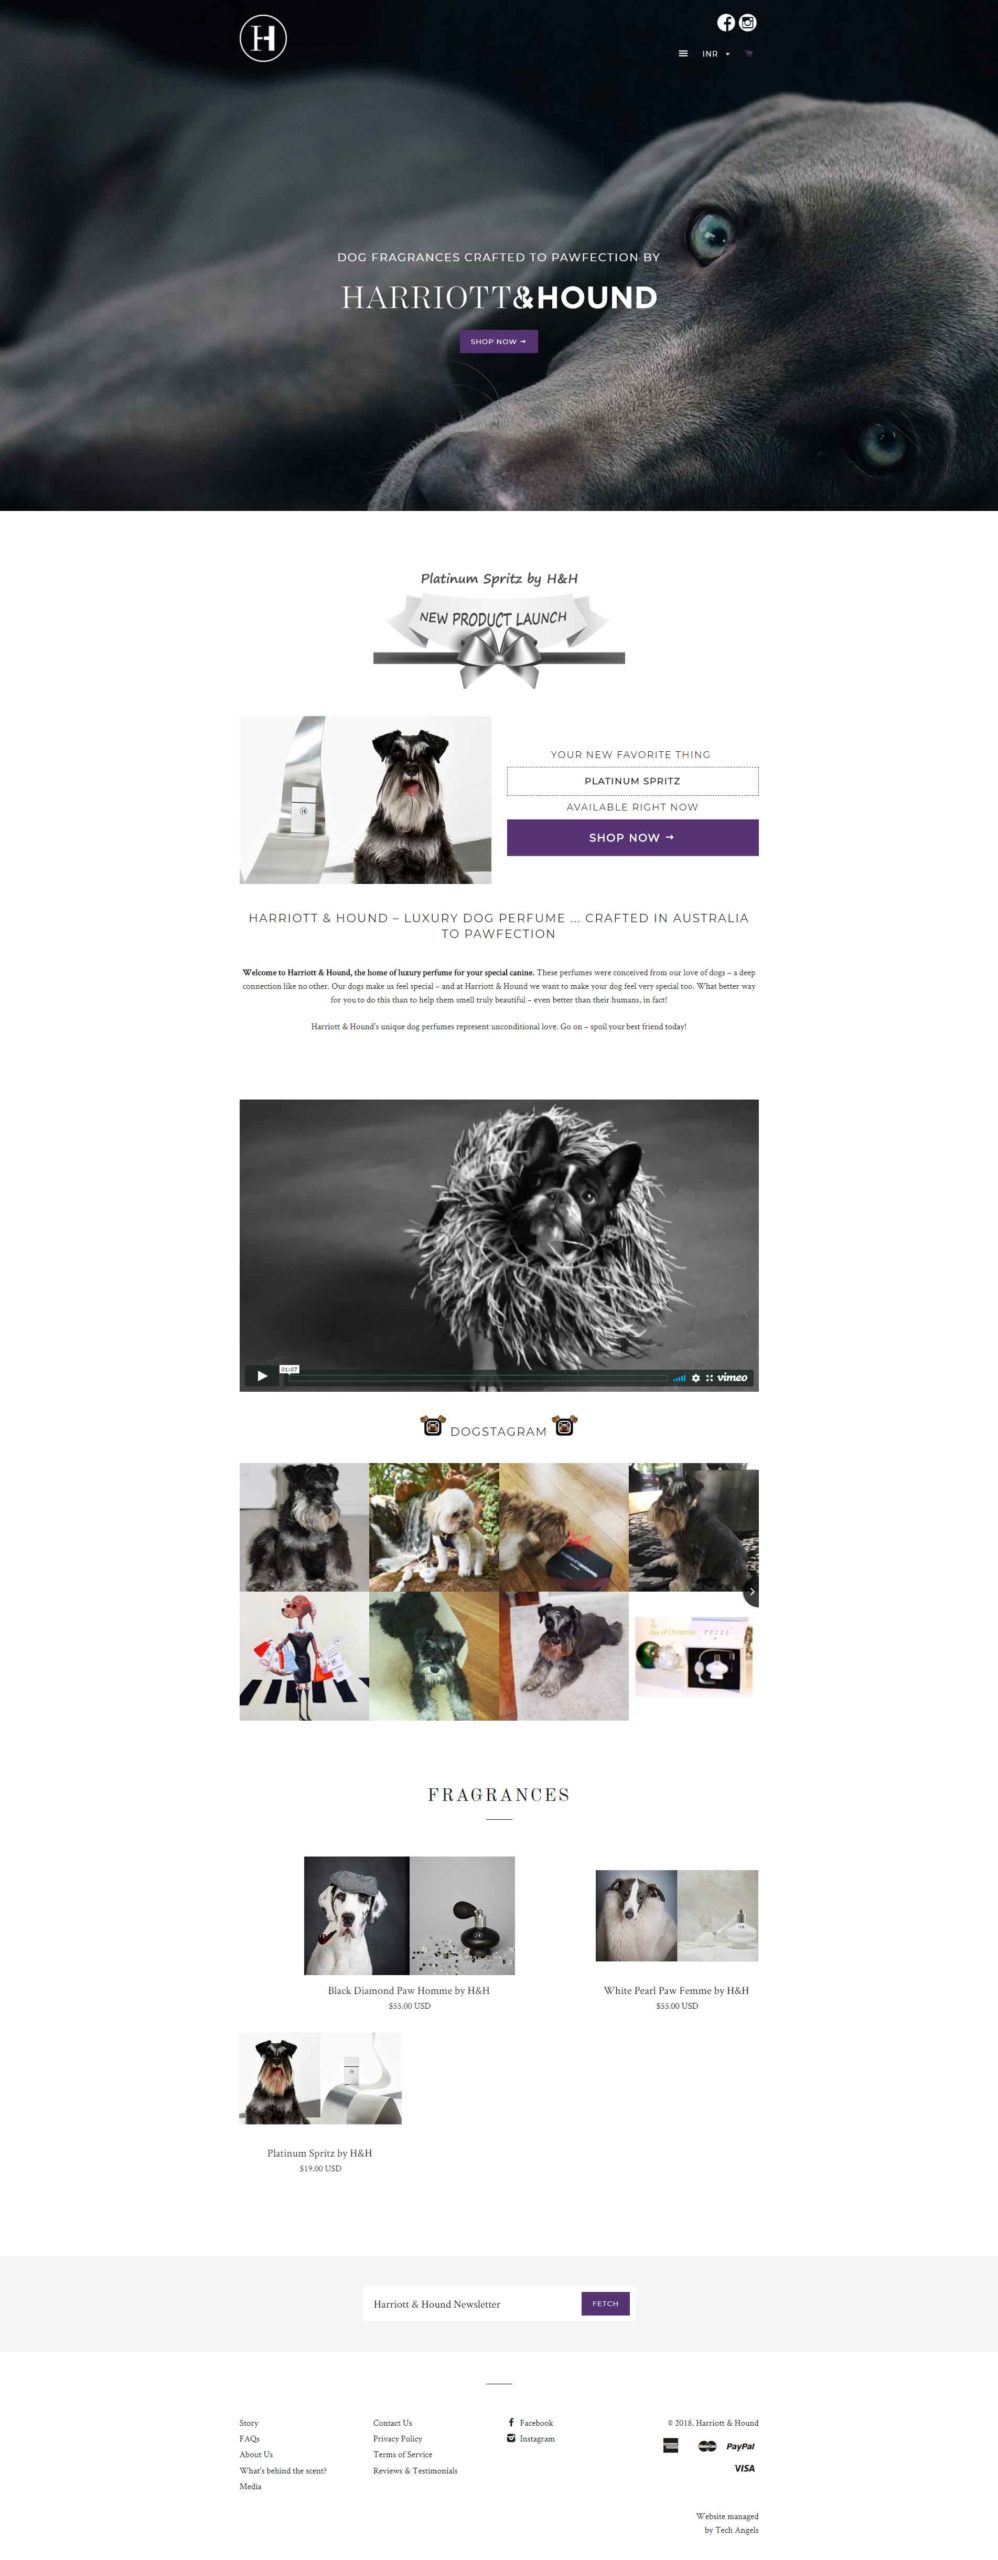 Pets Fragrances Online E commerce store design 2